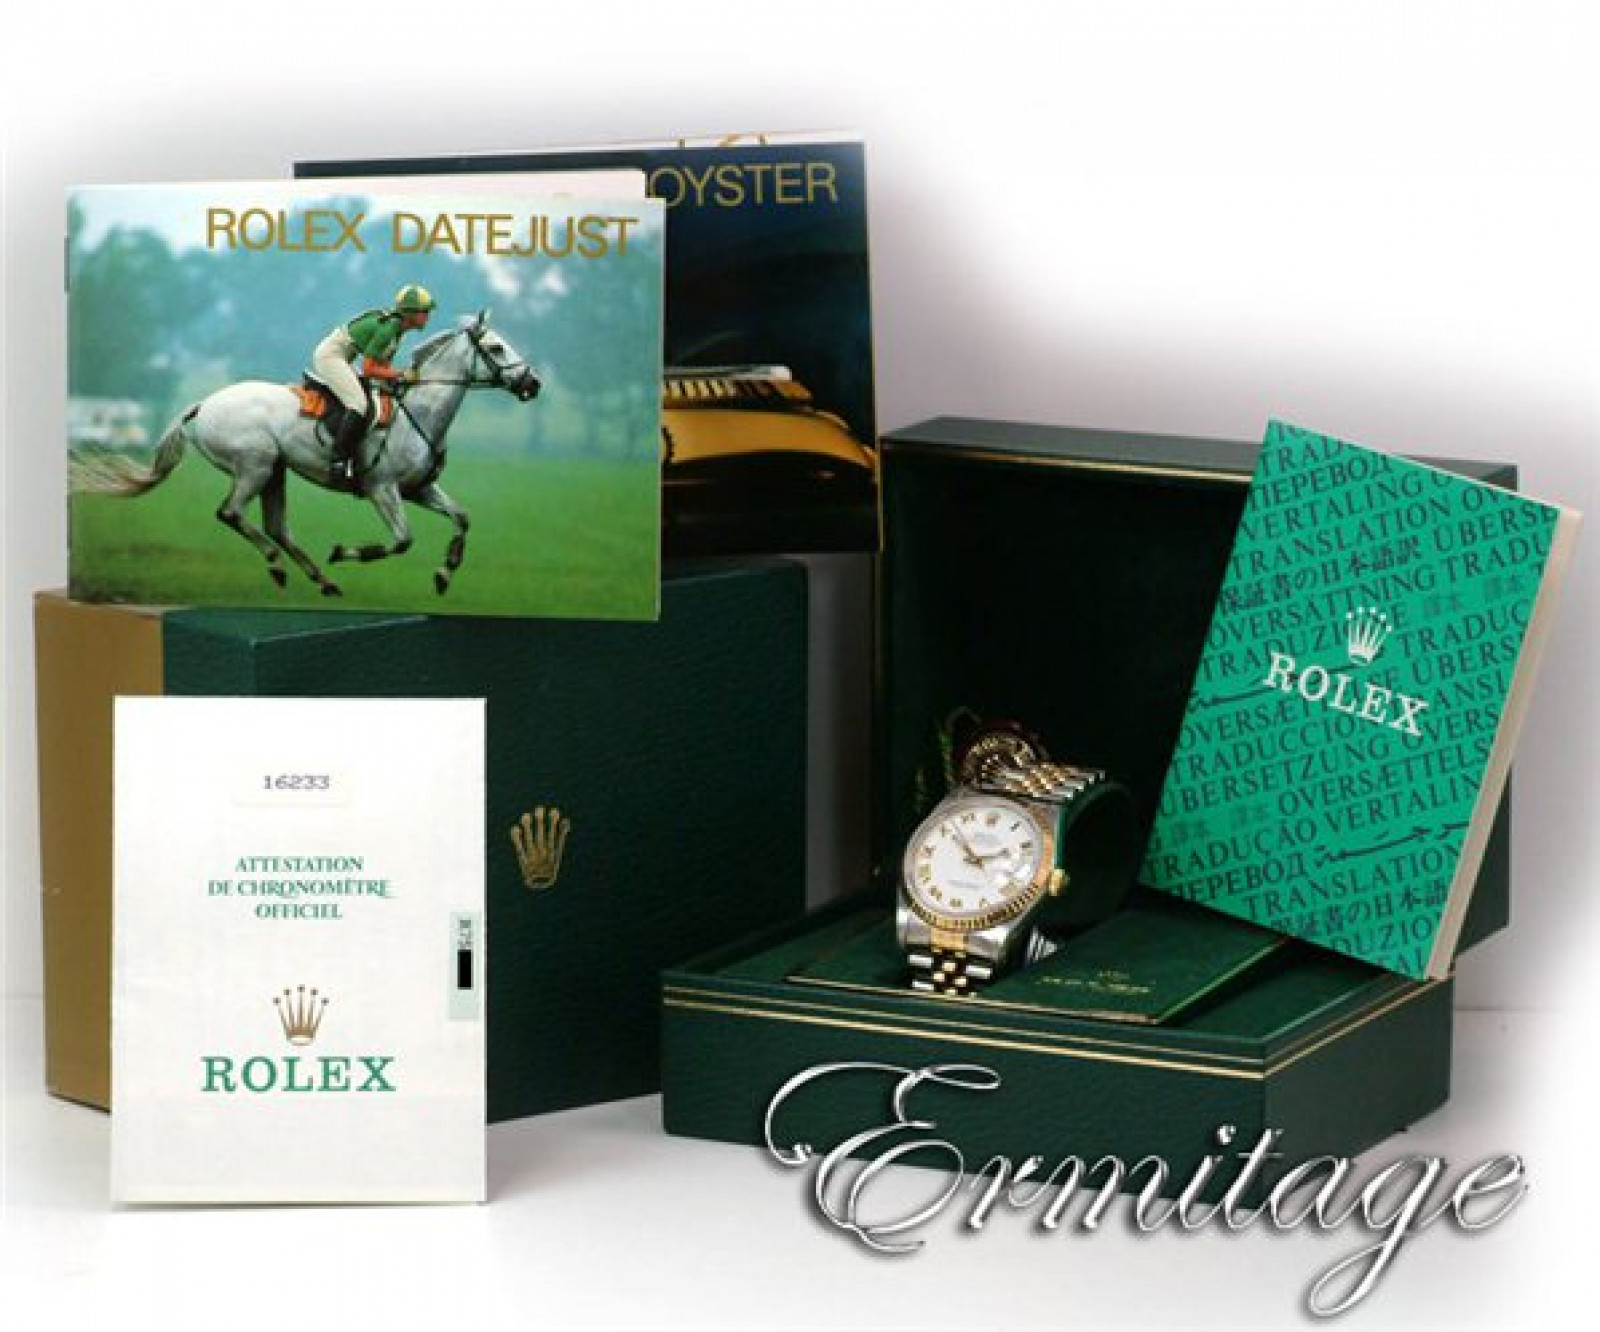 Rolex Buyer - Looking for Rolex 16233